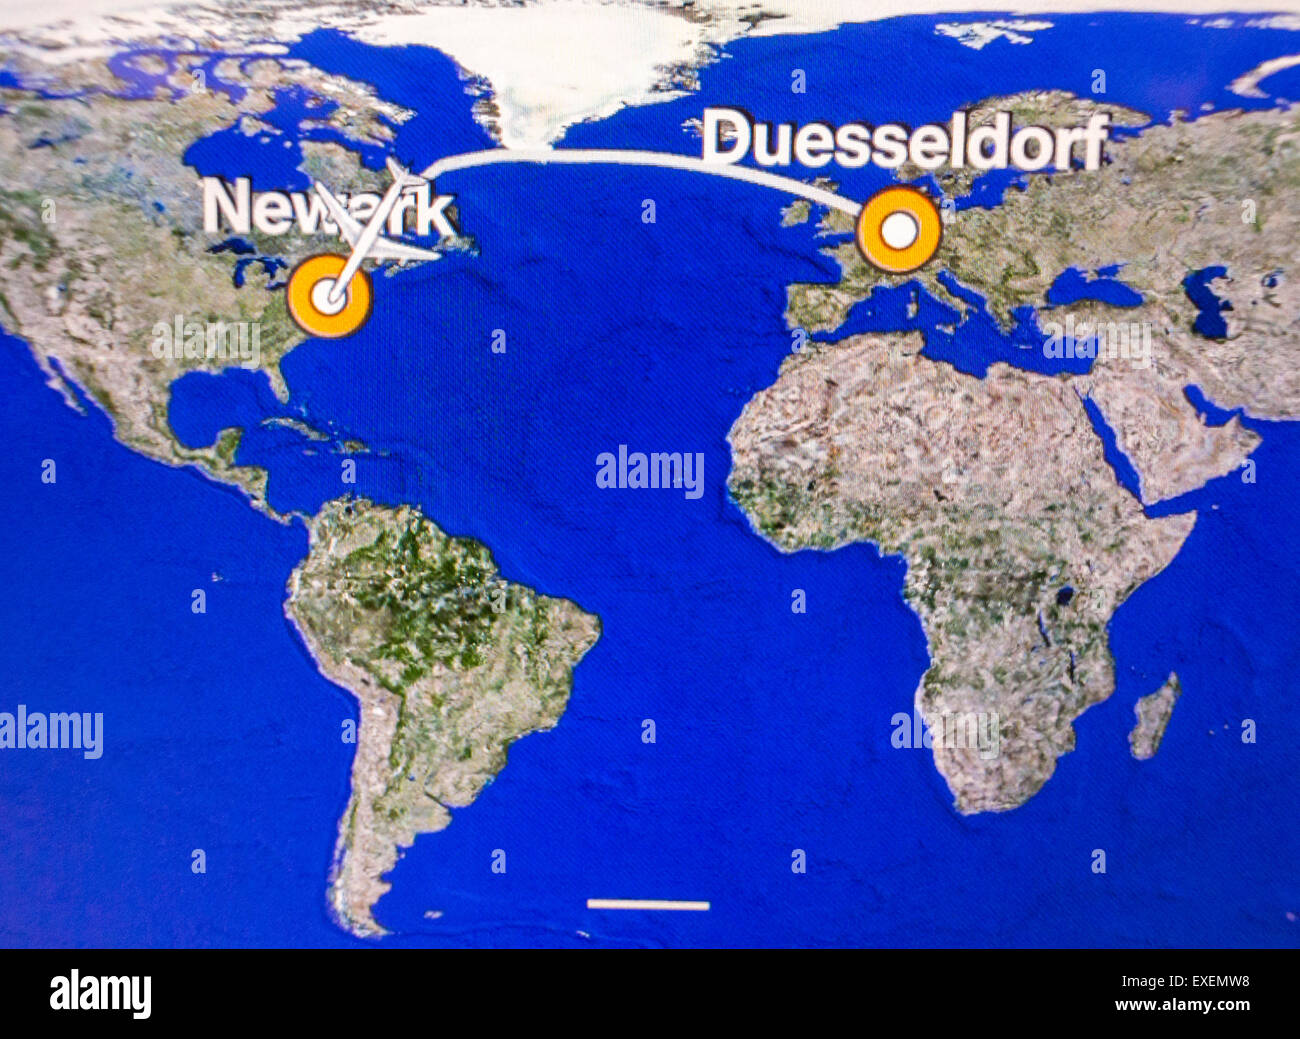 Karte auf Videoleinwand, Transatlantik-Flug von Düsseldorf nach Newark New  Jersey, USA, in Lufthansa Flugzeug Stockfotografie - Alamy